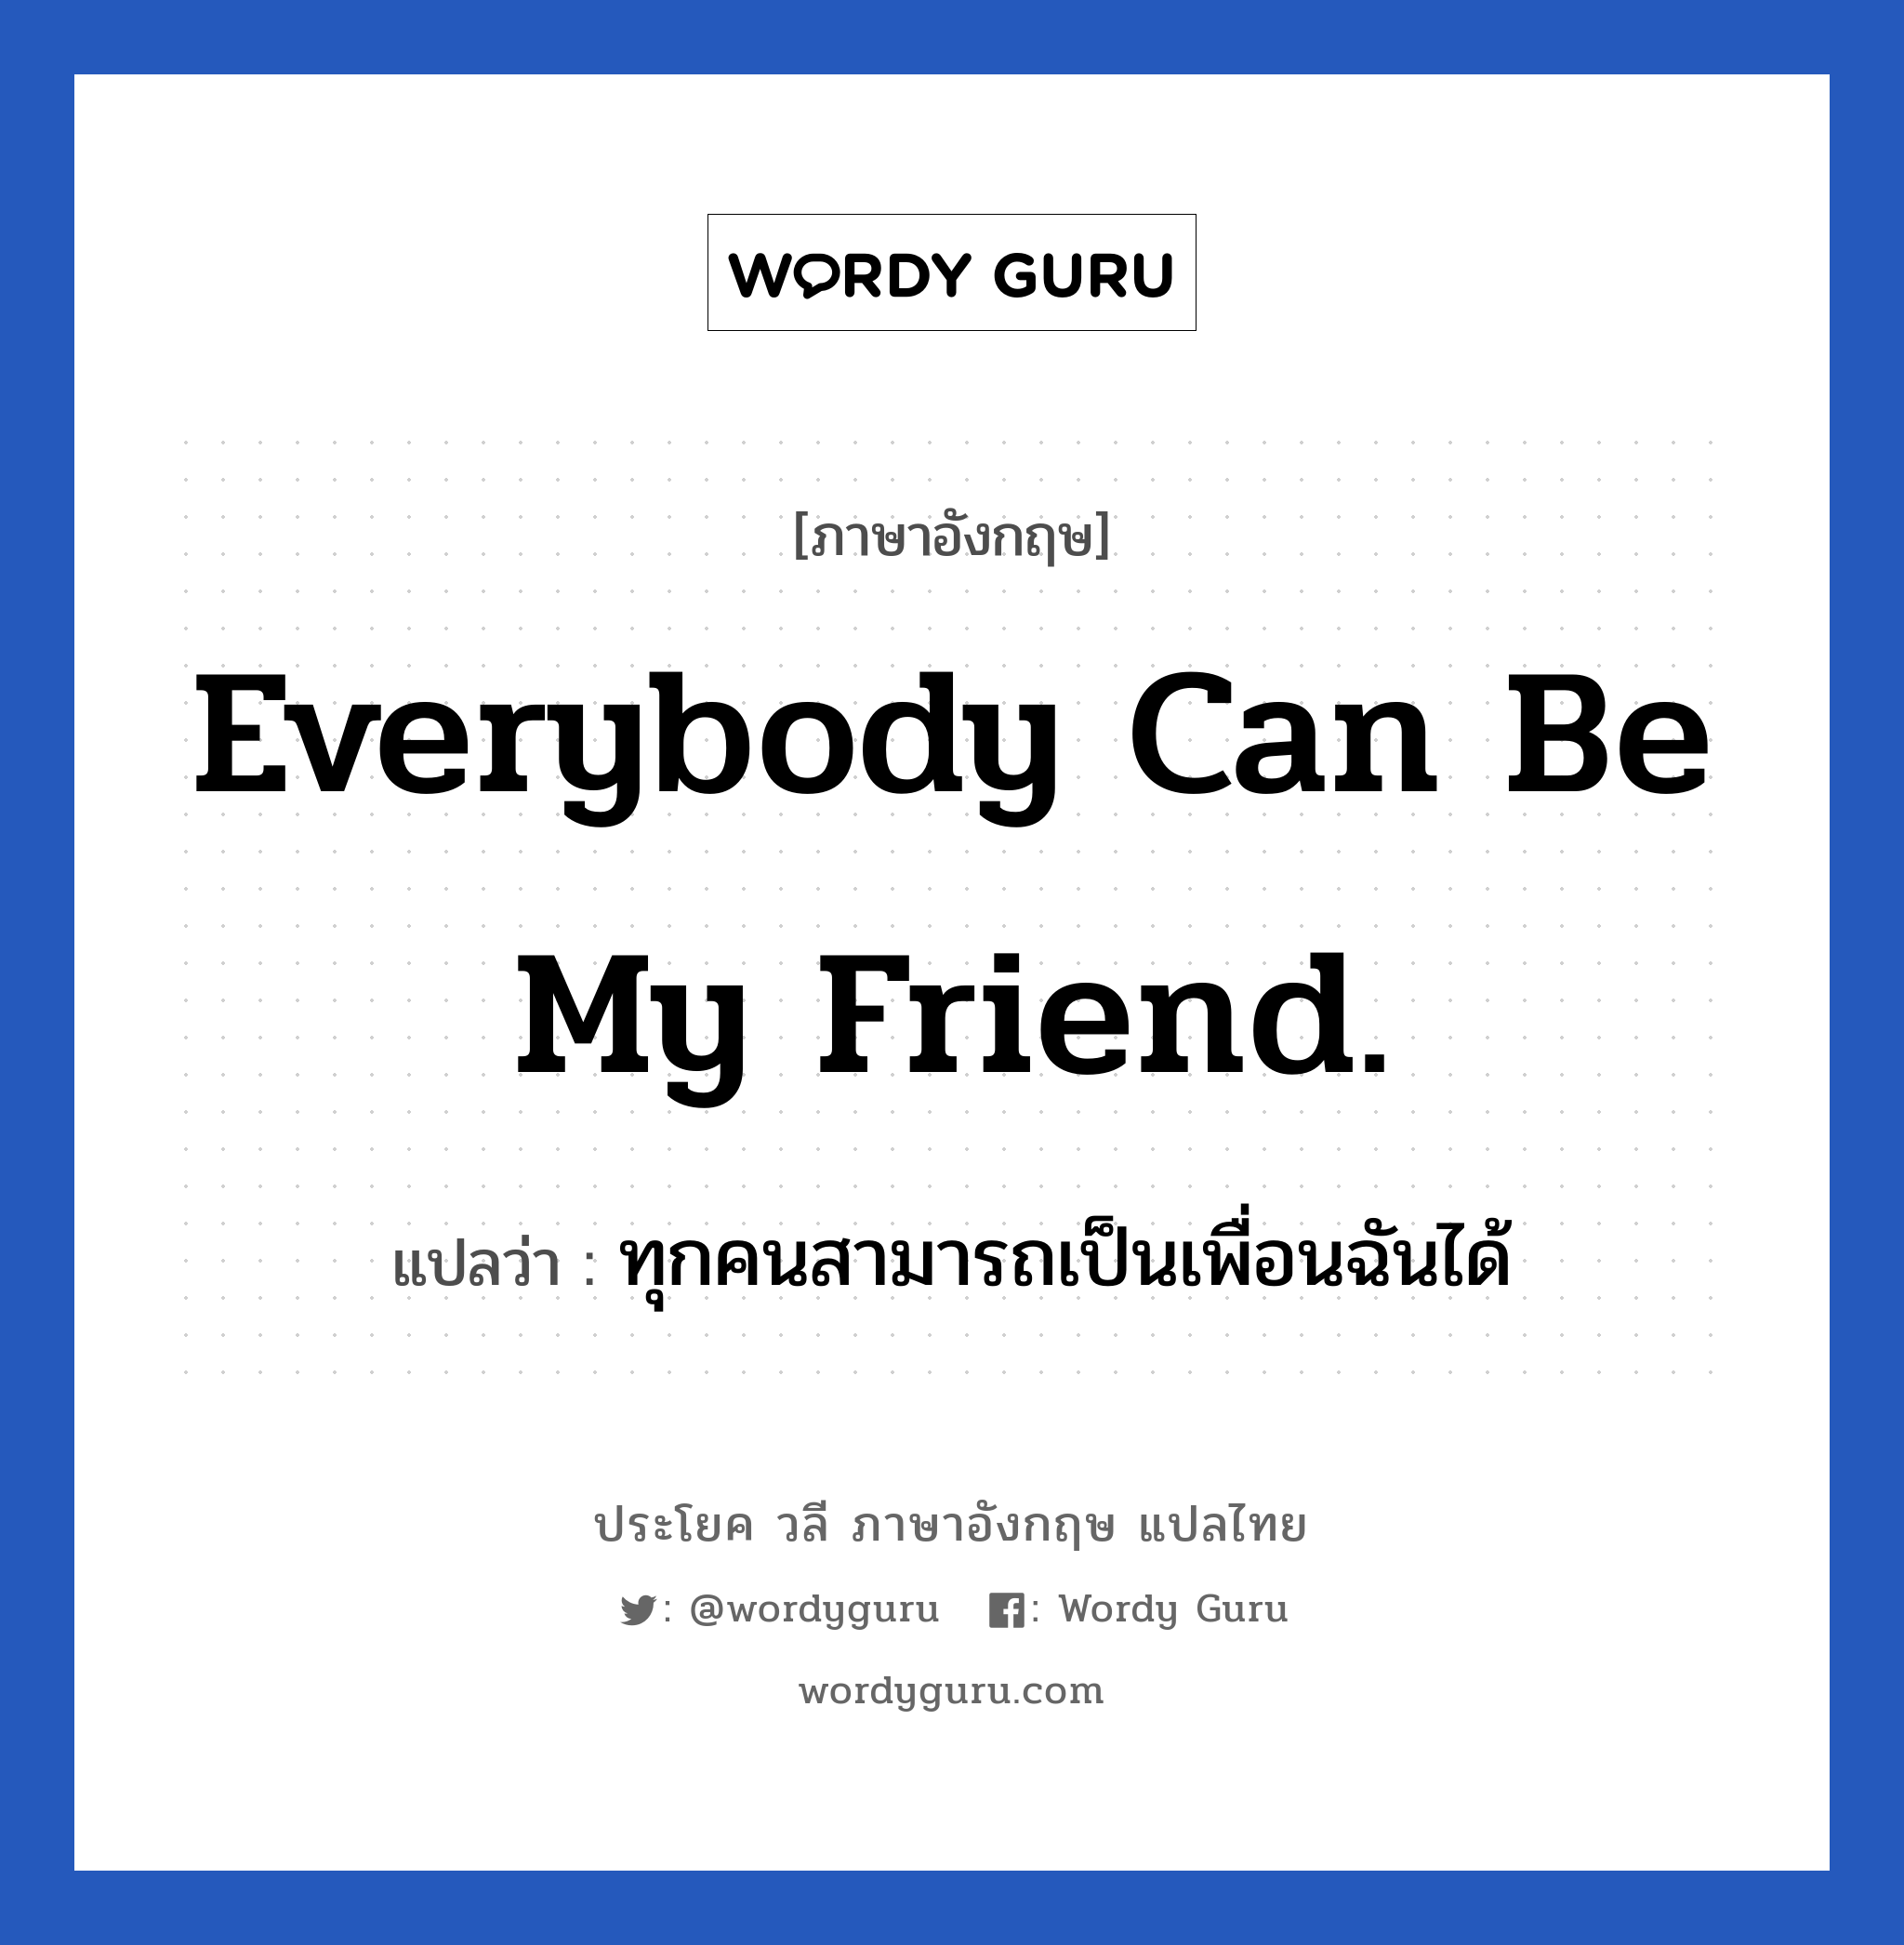 Everybody can be my friend. แปลว่า?, วลีภาษาอังกฤษ Everybody can be my friend. แปลว่า ทุกคนสามารถเป็นเพื่อนฉันได้